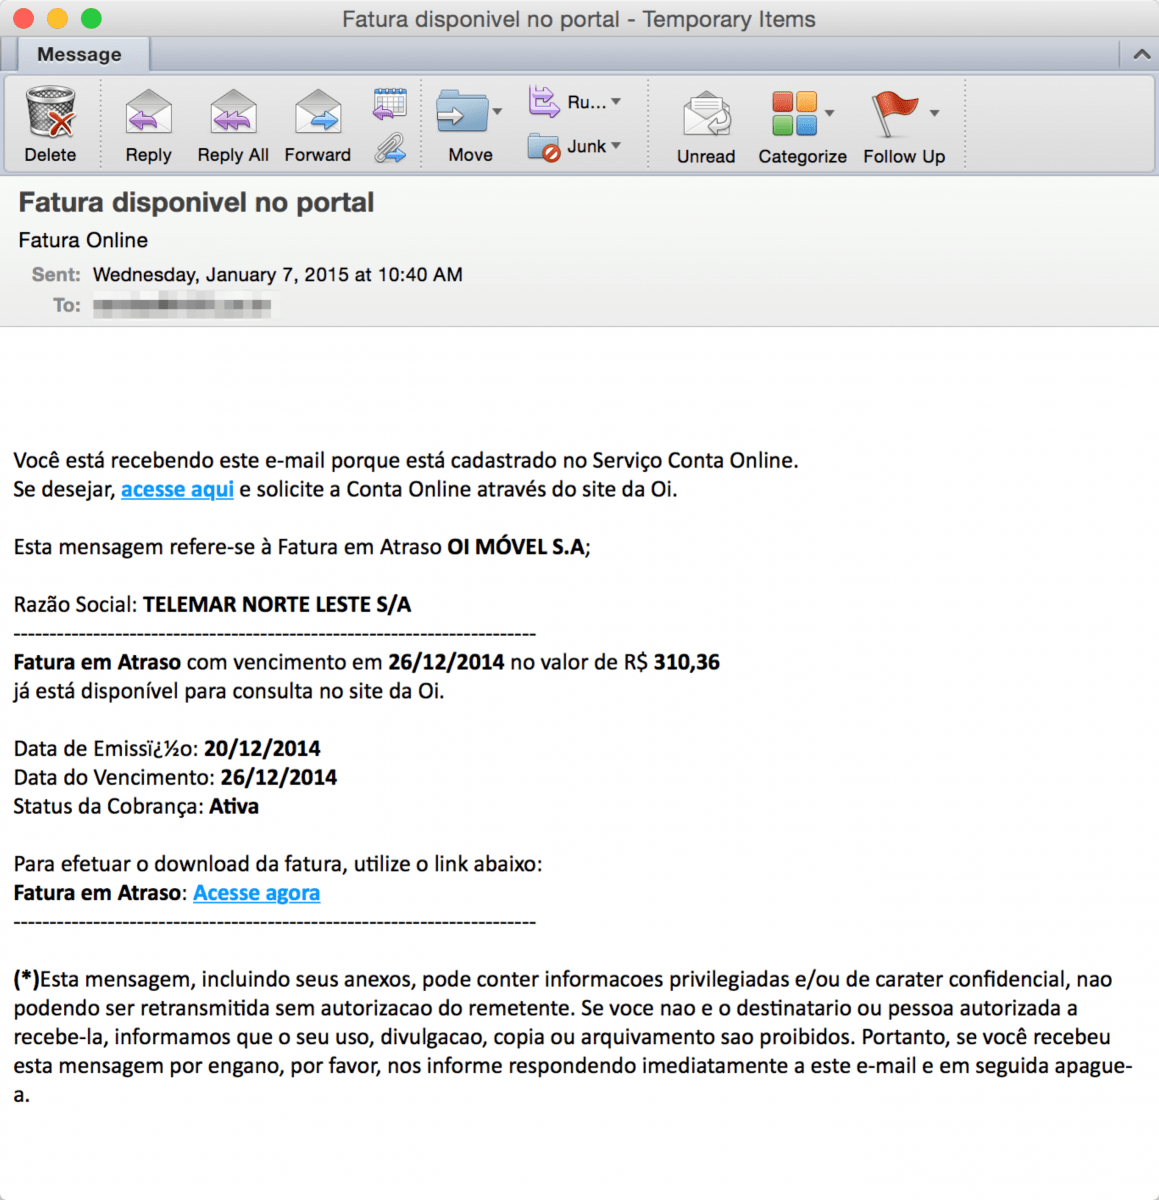 Phishing Email with Malicious Phish Pharm URLs